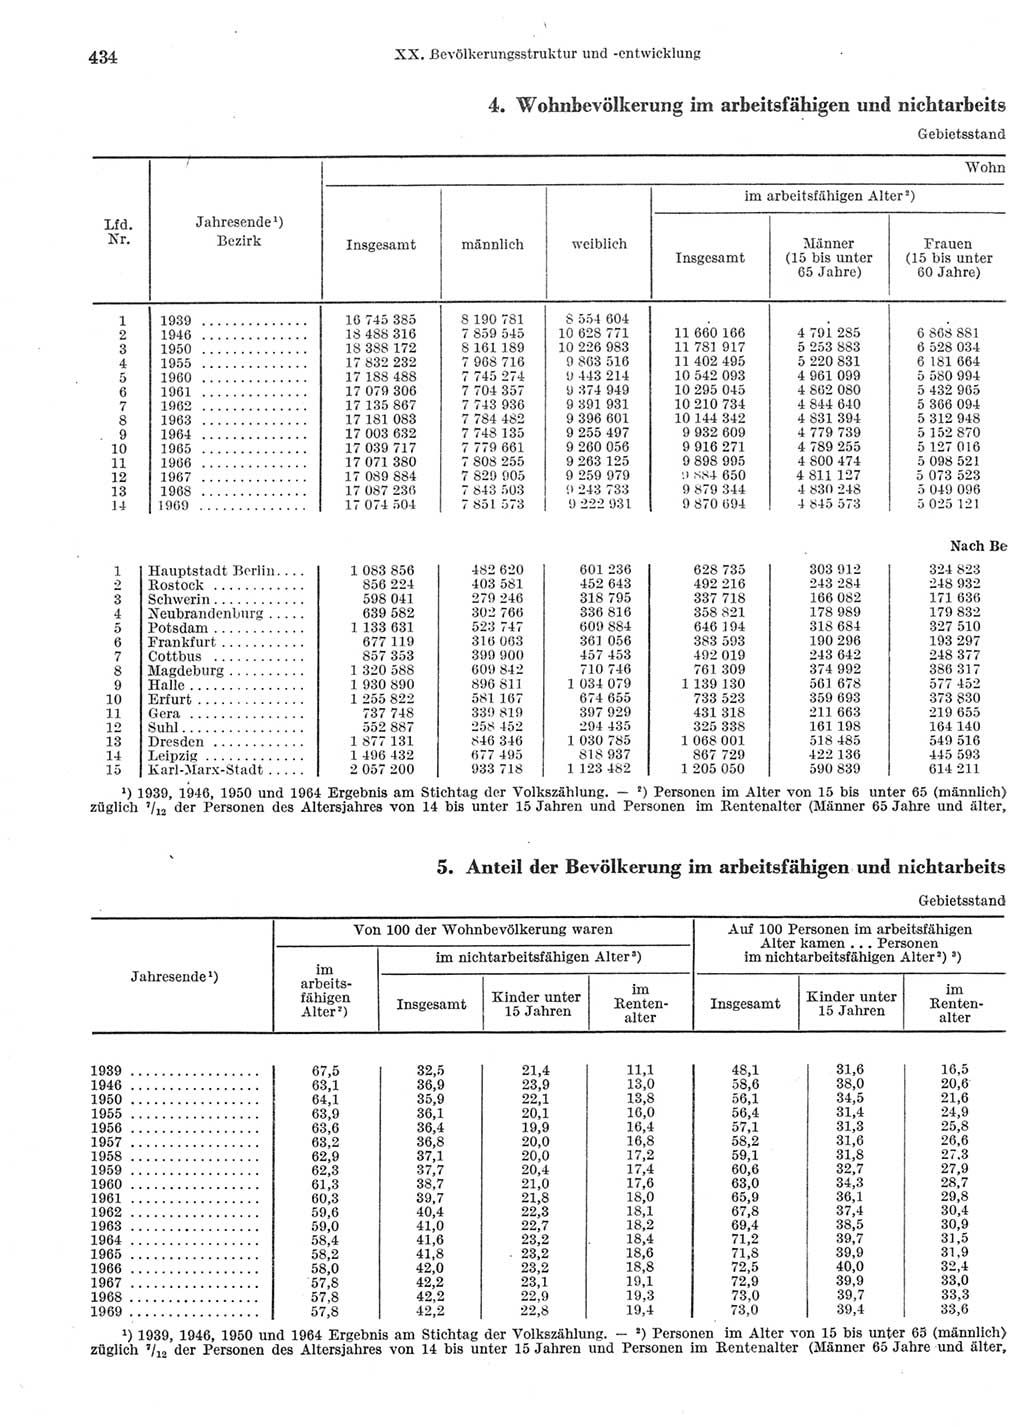 Statistisches Jahrbuch der Deutschen Demokratischen Republik (DDR) 1970, Seite 434 (Stat. Jb. DDR 1970, S. 434)